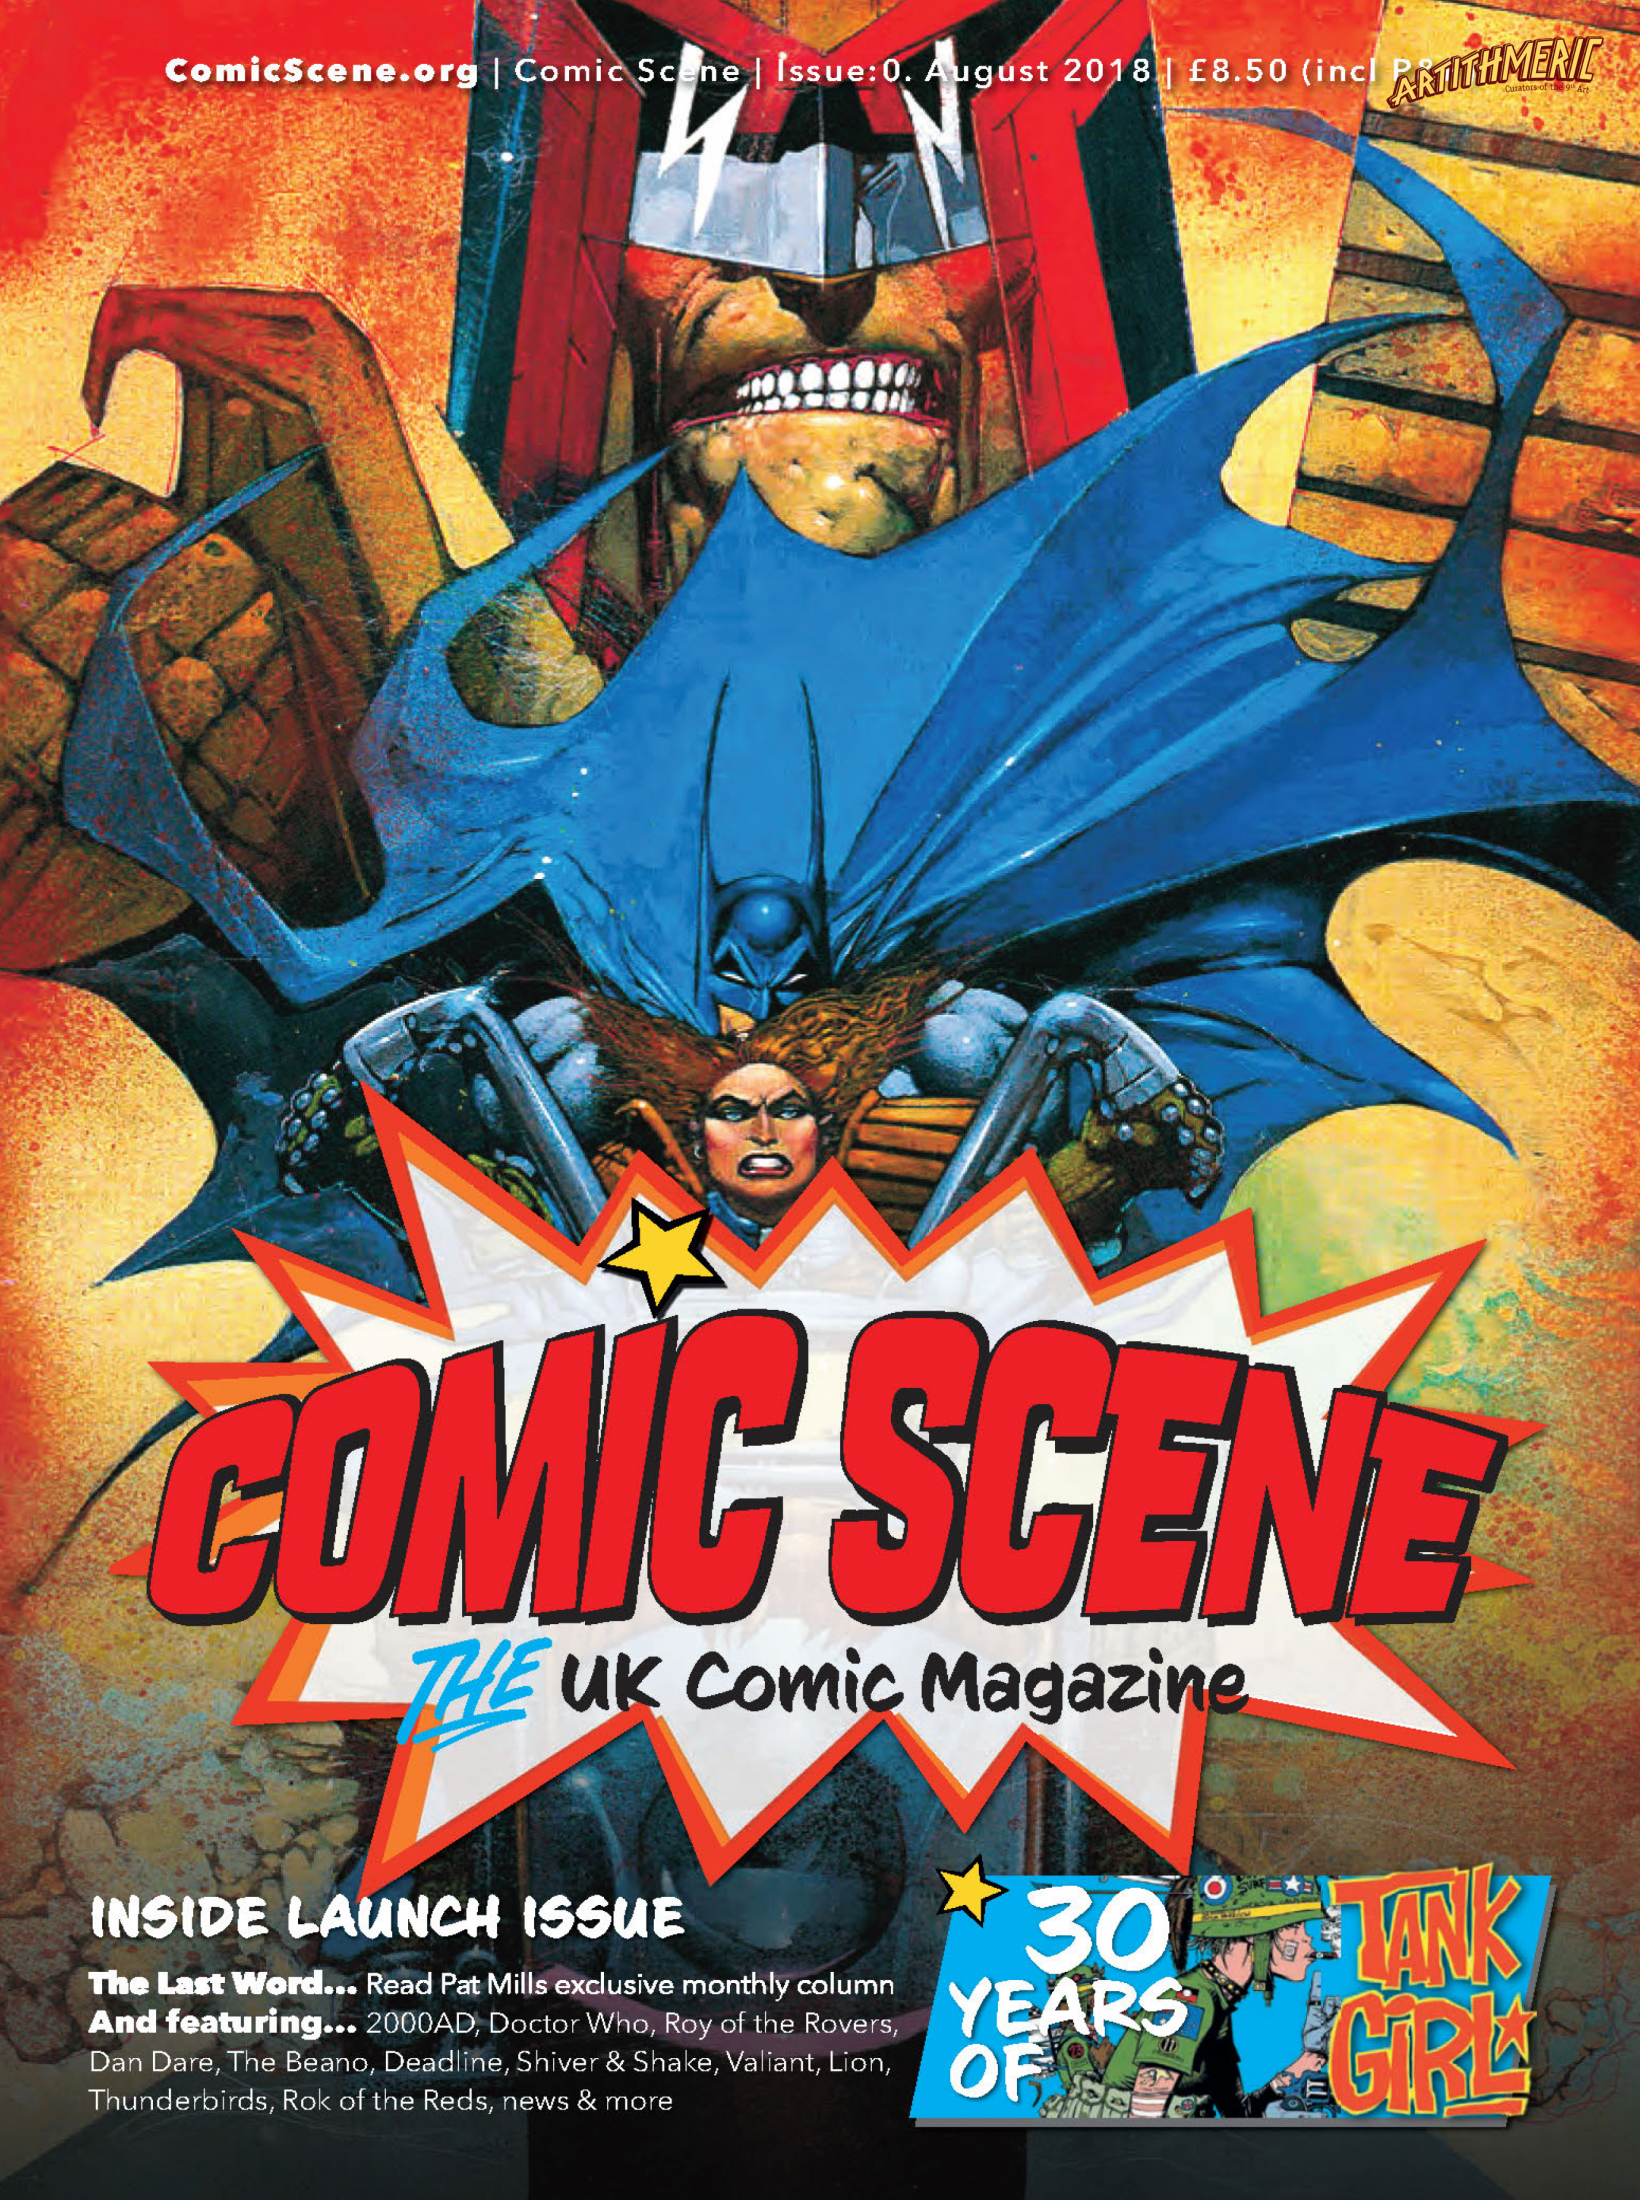 ComicScene Vol 1 Issue 0 - Artithmeric